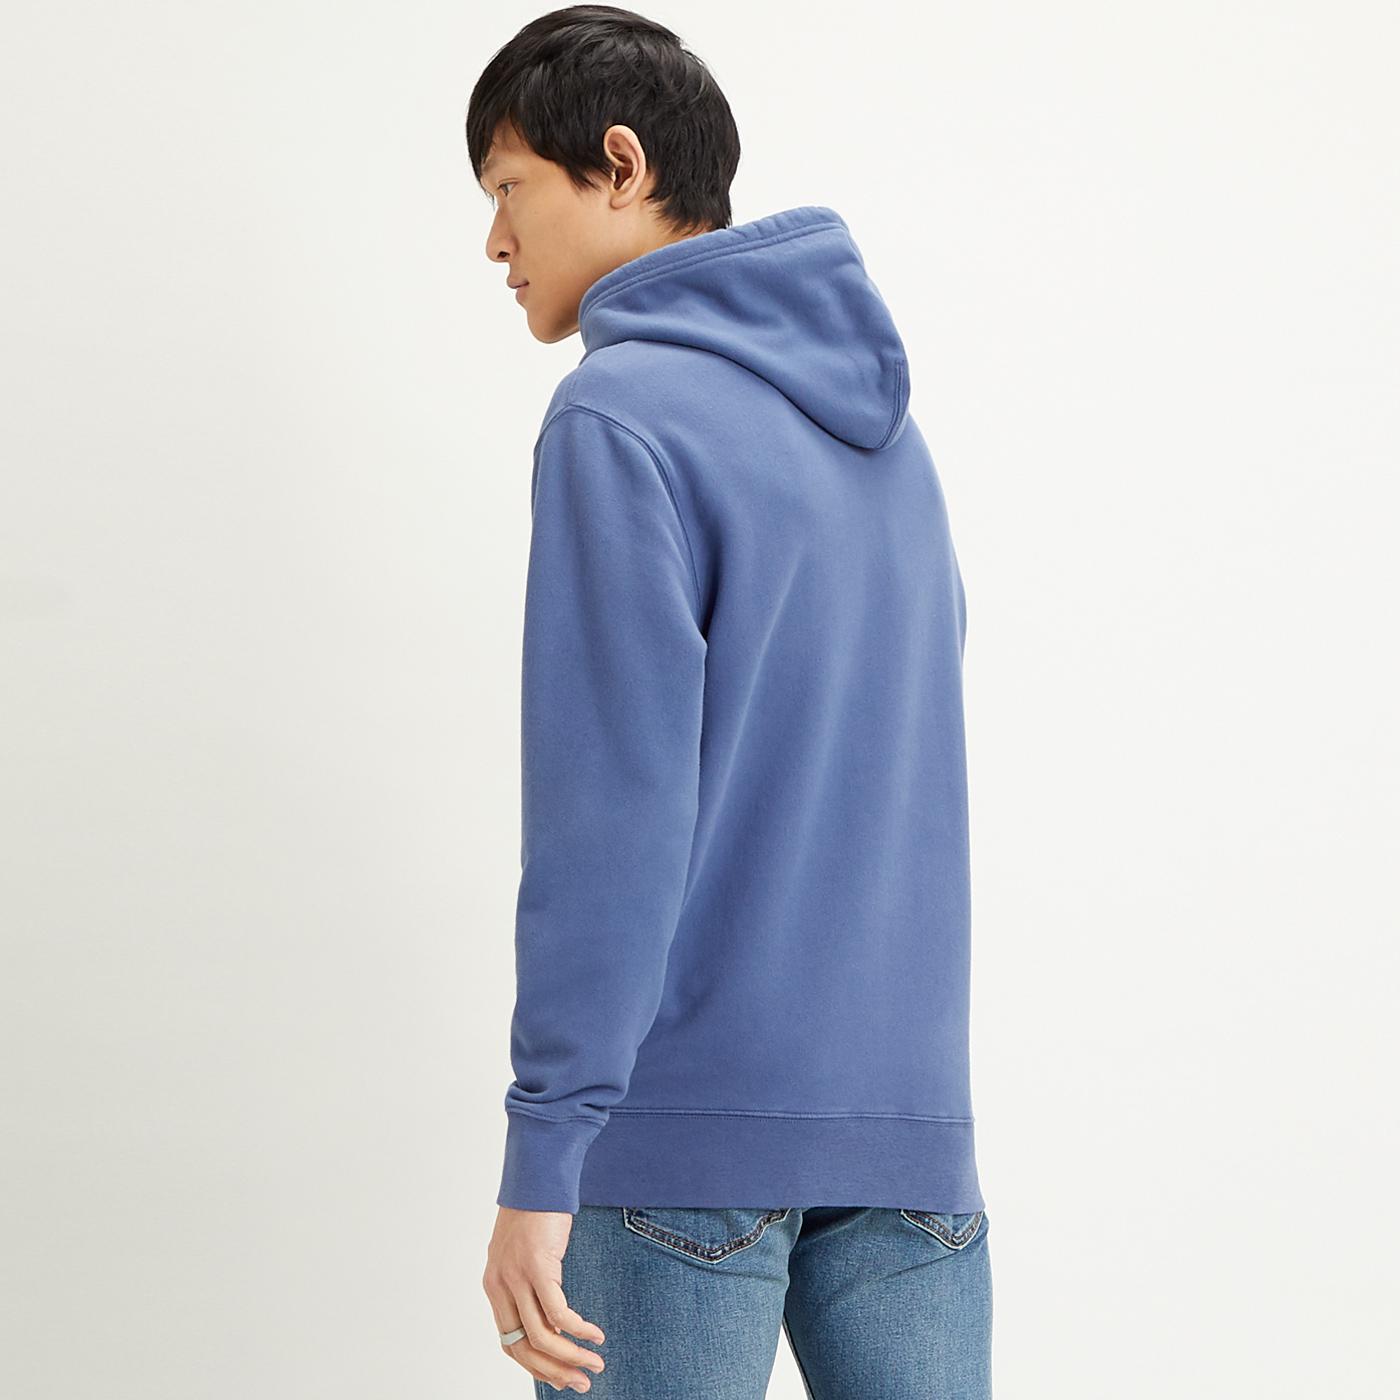 LEVI'S Original Men's Retro Hooded Sweatshirt in Blue Indigo